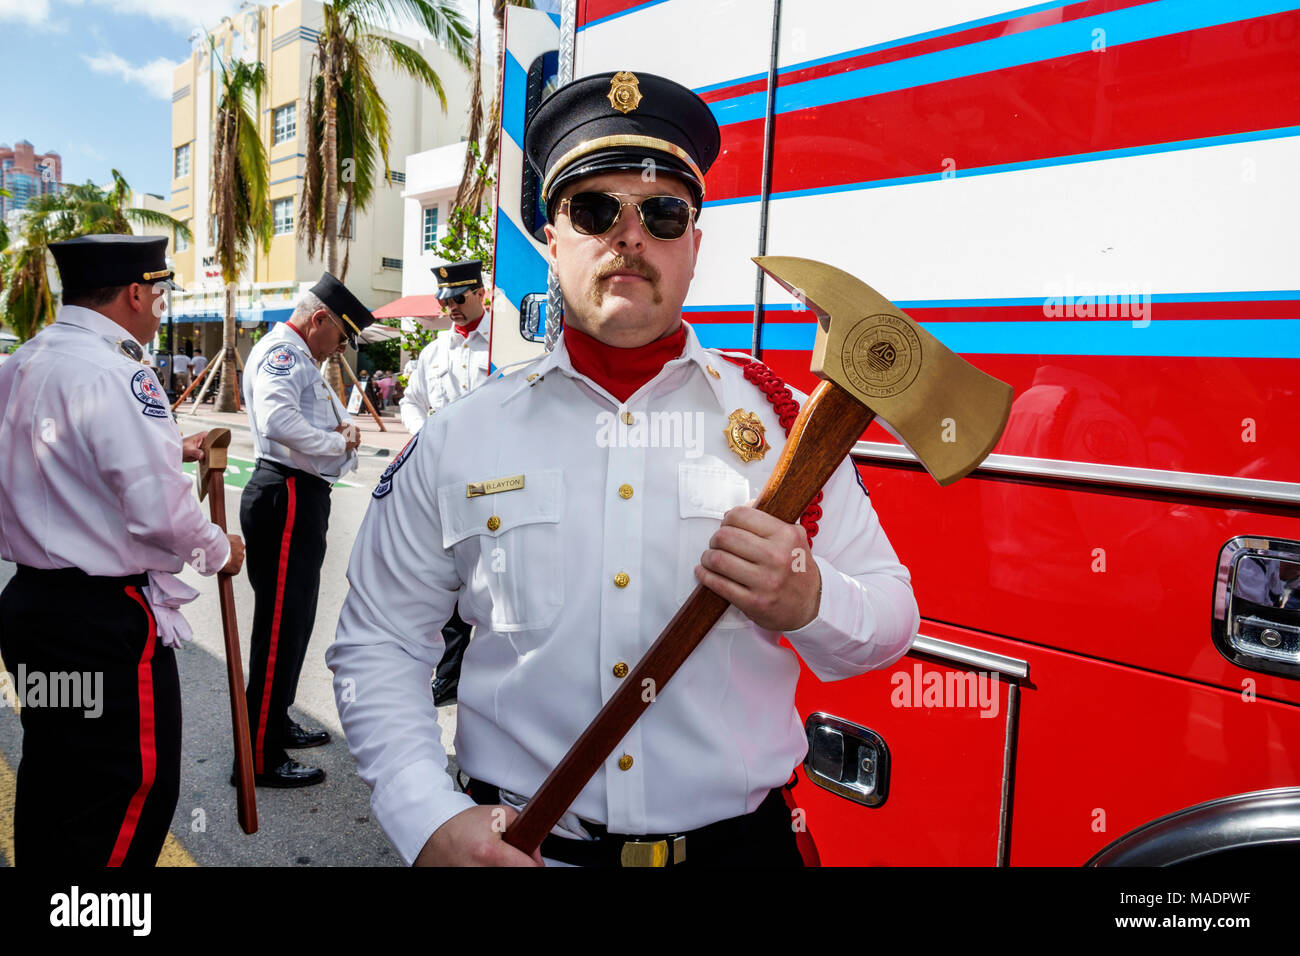 Miami Beach Florida, Veterans Day, Parade-Staging-Bereich, Miami Beach,  Feuerwehr, Feuerwehrmann, formelle Uniform, Axt, Männer männlich,  FL171117010 Stockfotografie - Alamy